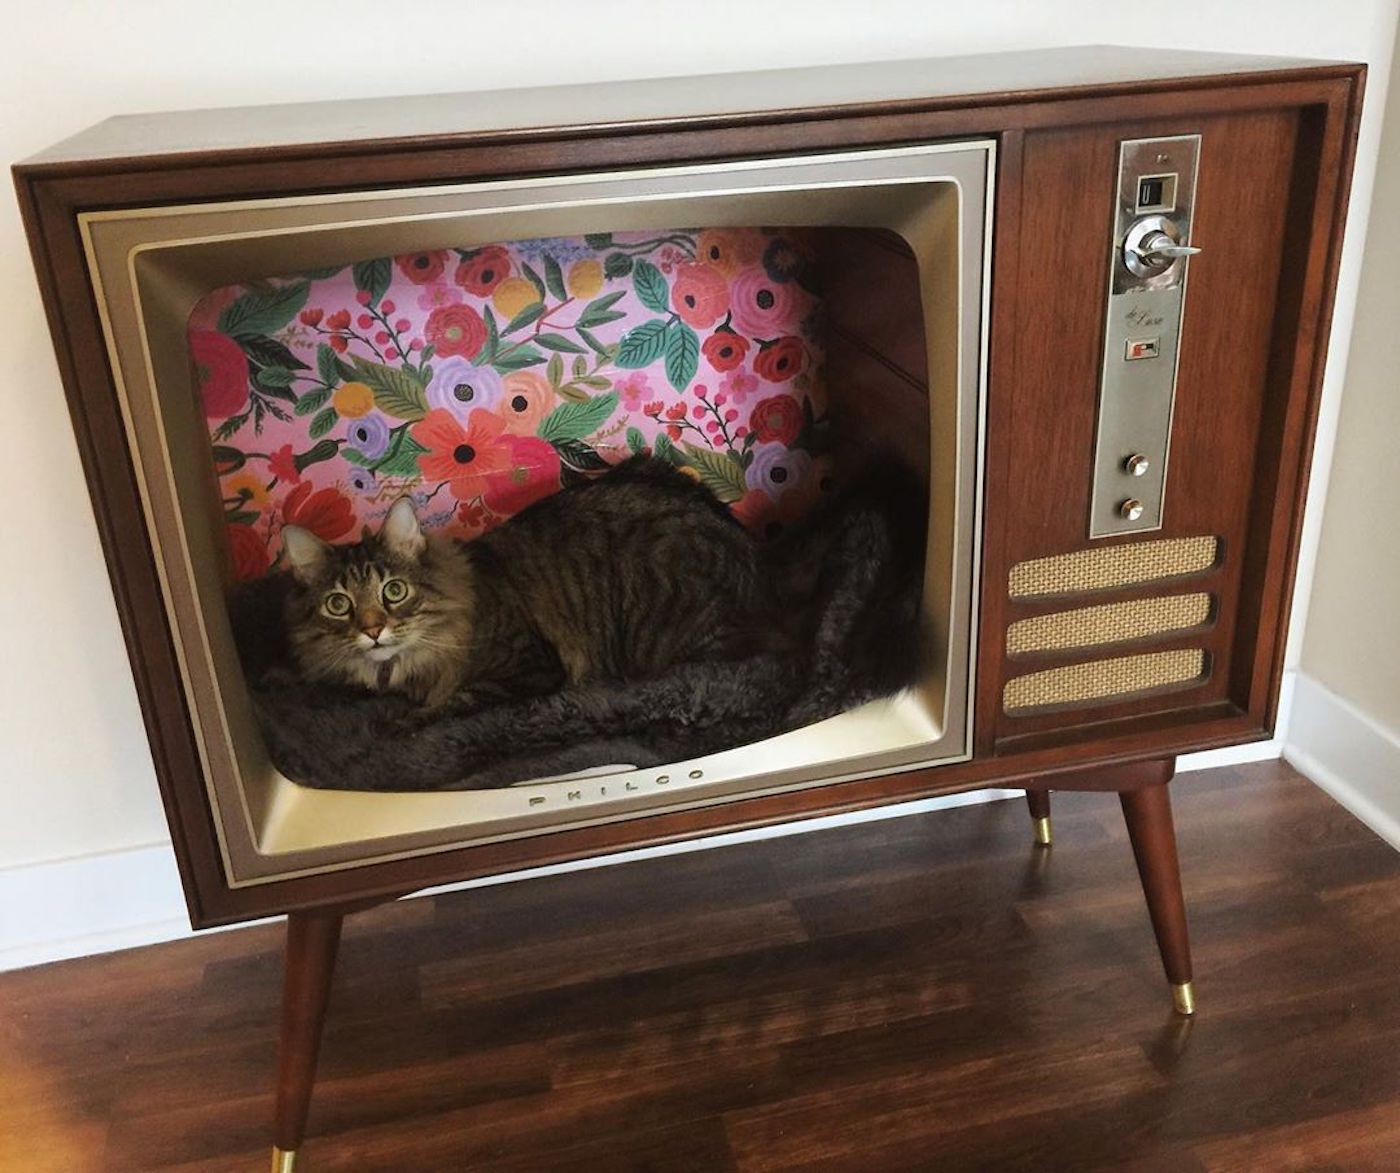 Recycler une télévision vintage en nid douillet pour votre chat